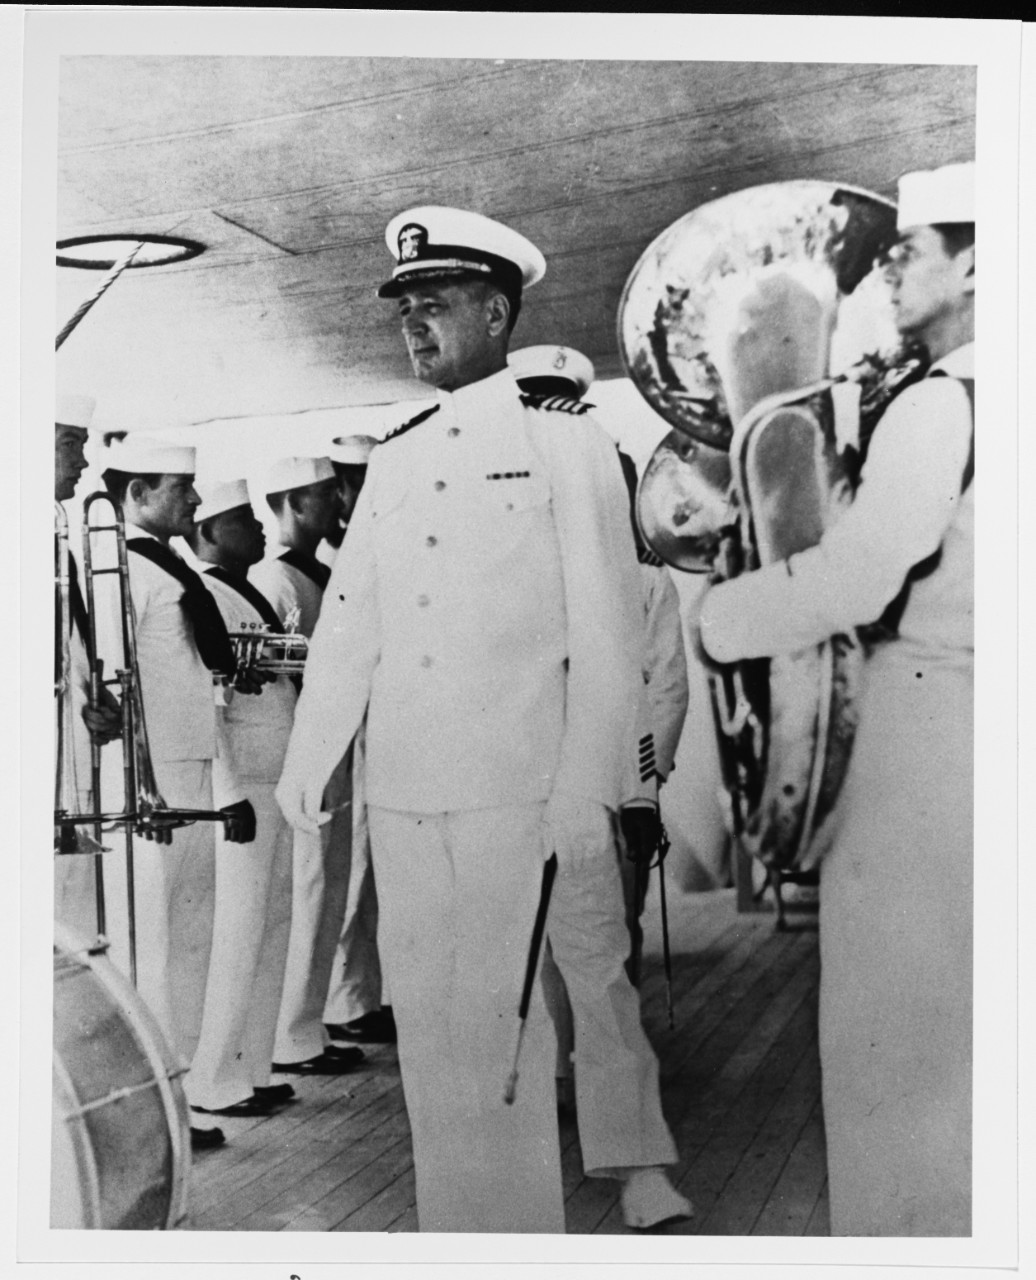 NH 93158 Captain Albert H. Rooks, USN